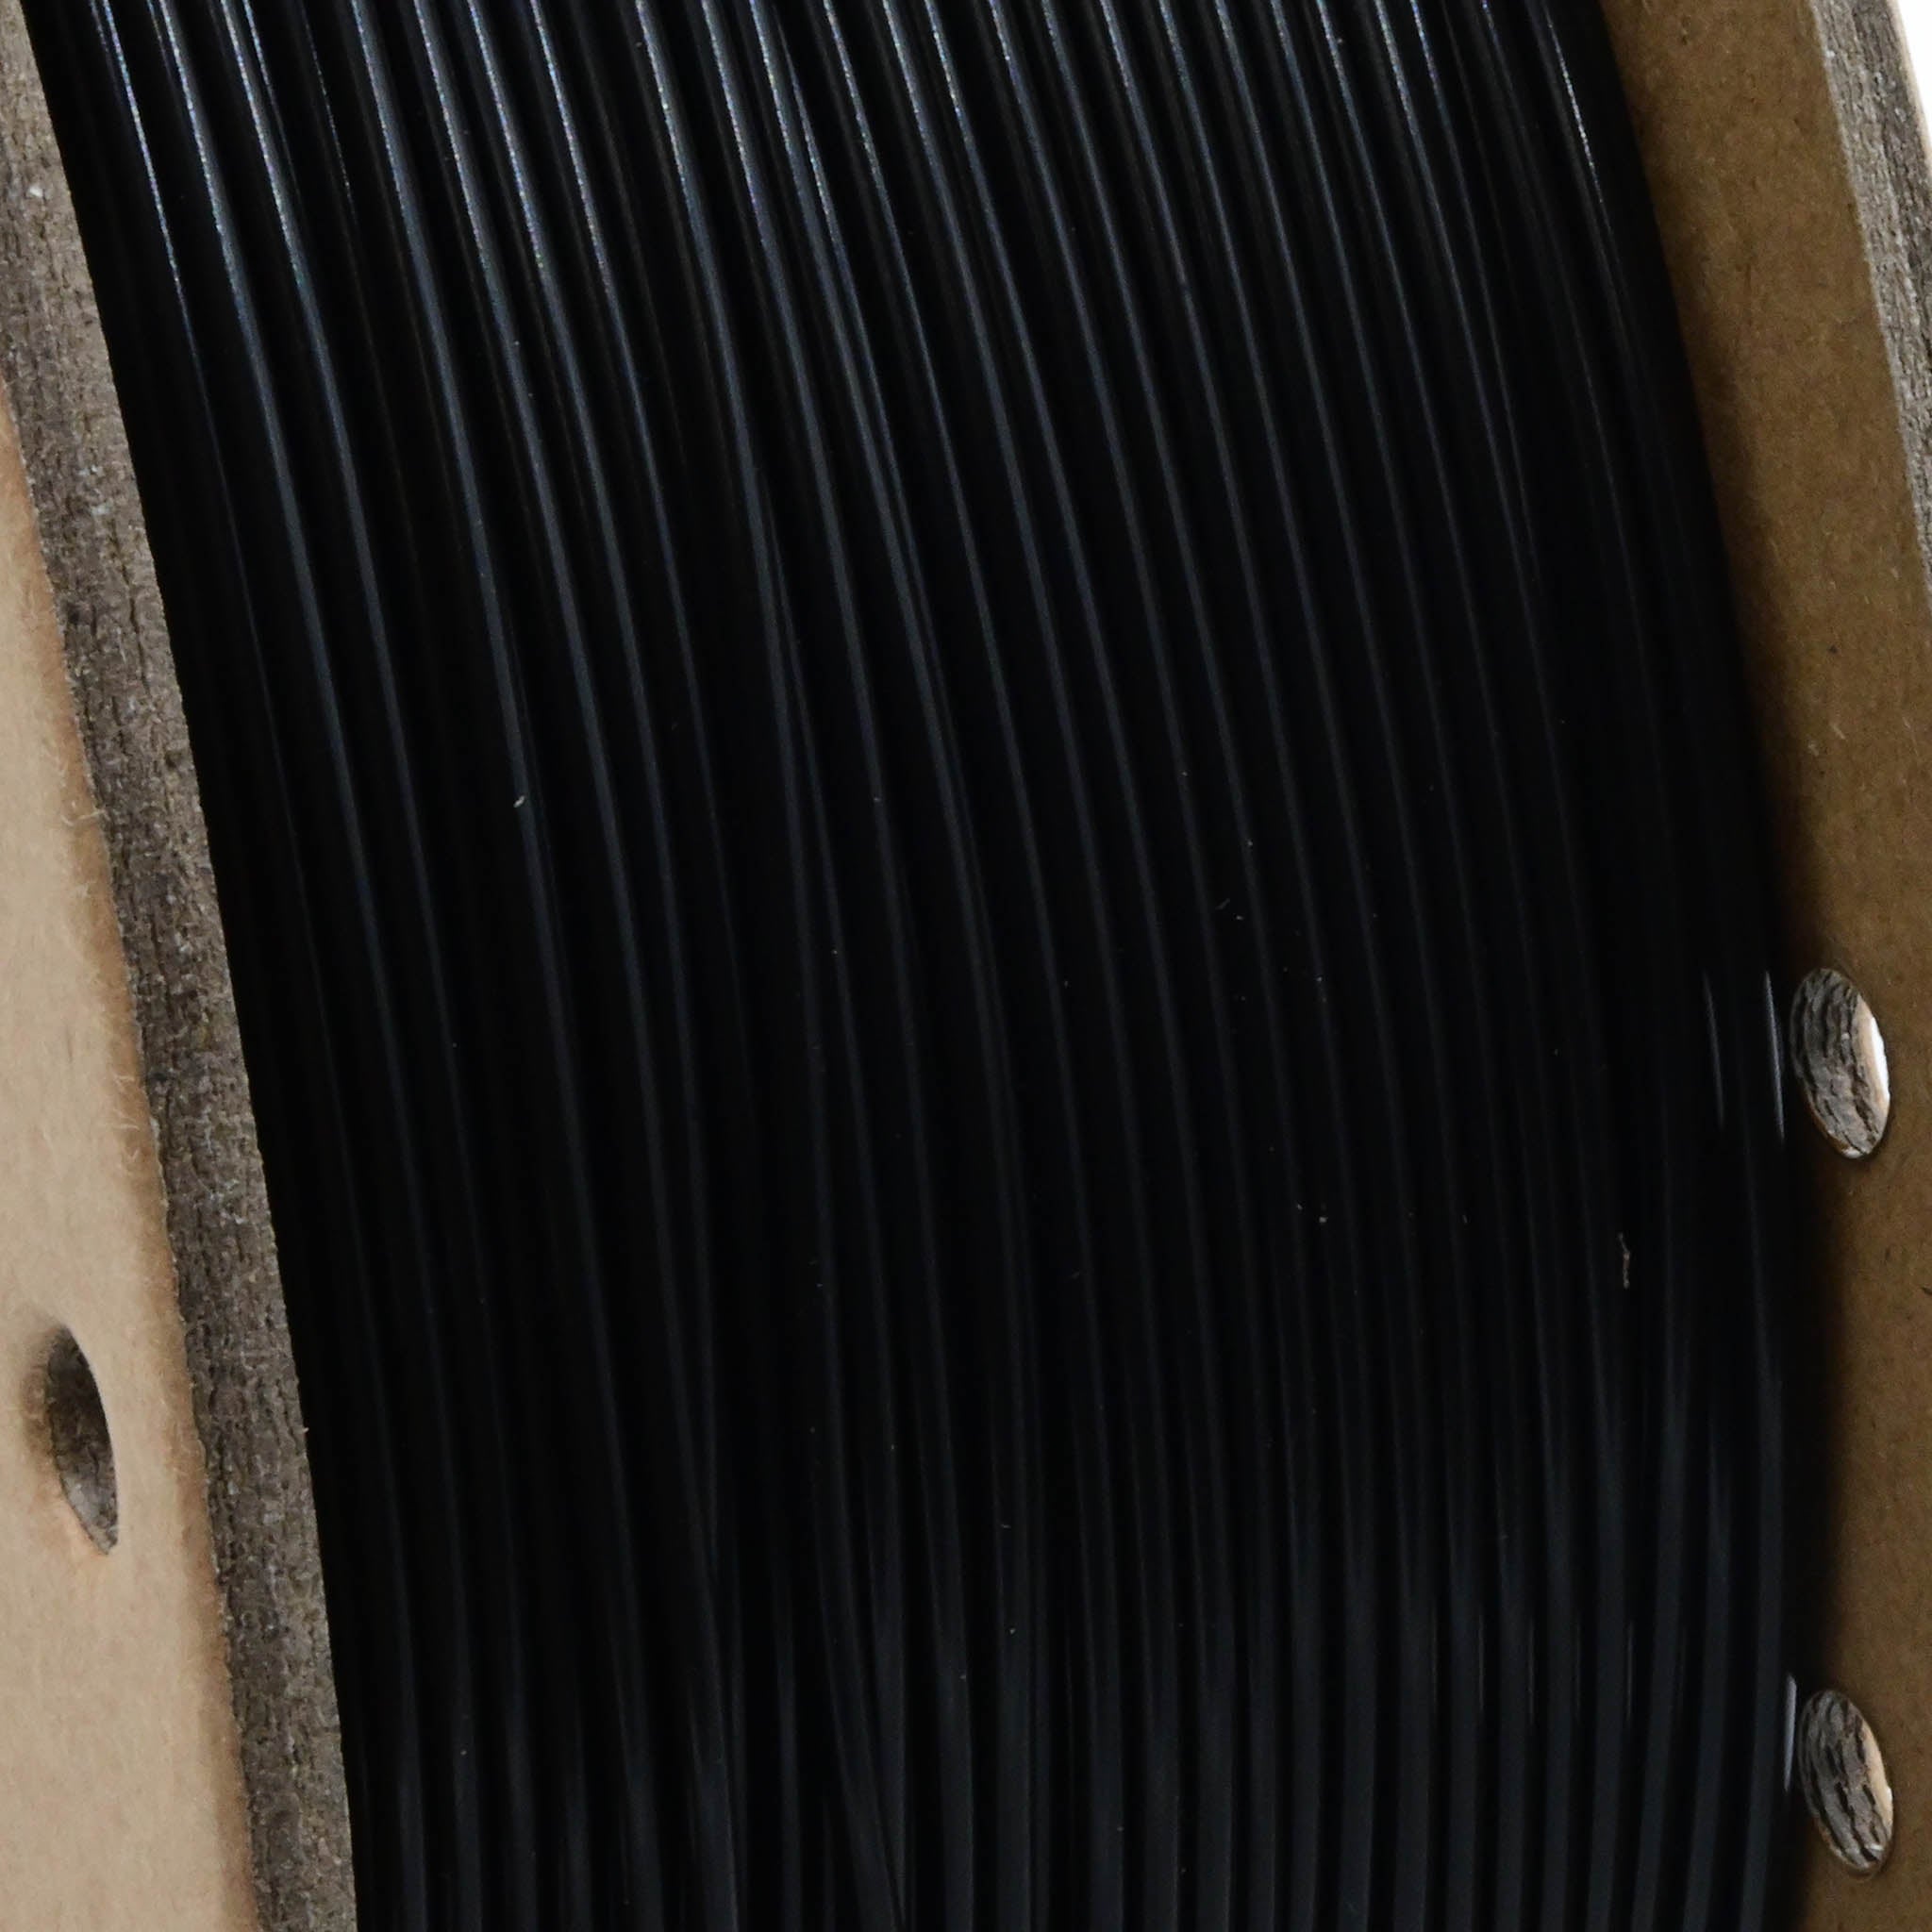 Hyper PLA Carbon Fiber 1.75mm 3D Printing Filament 1kg